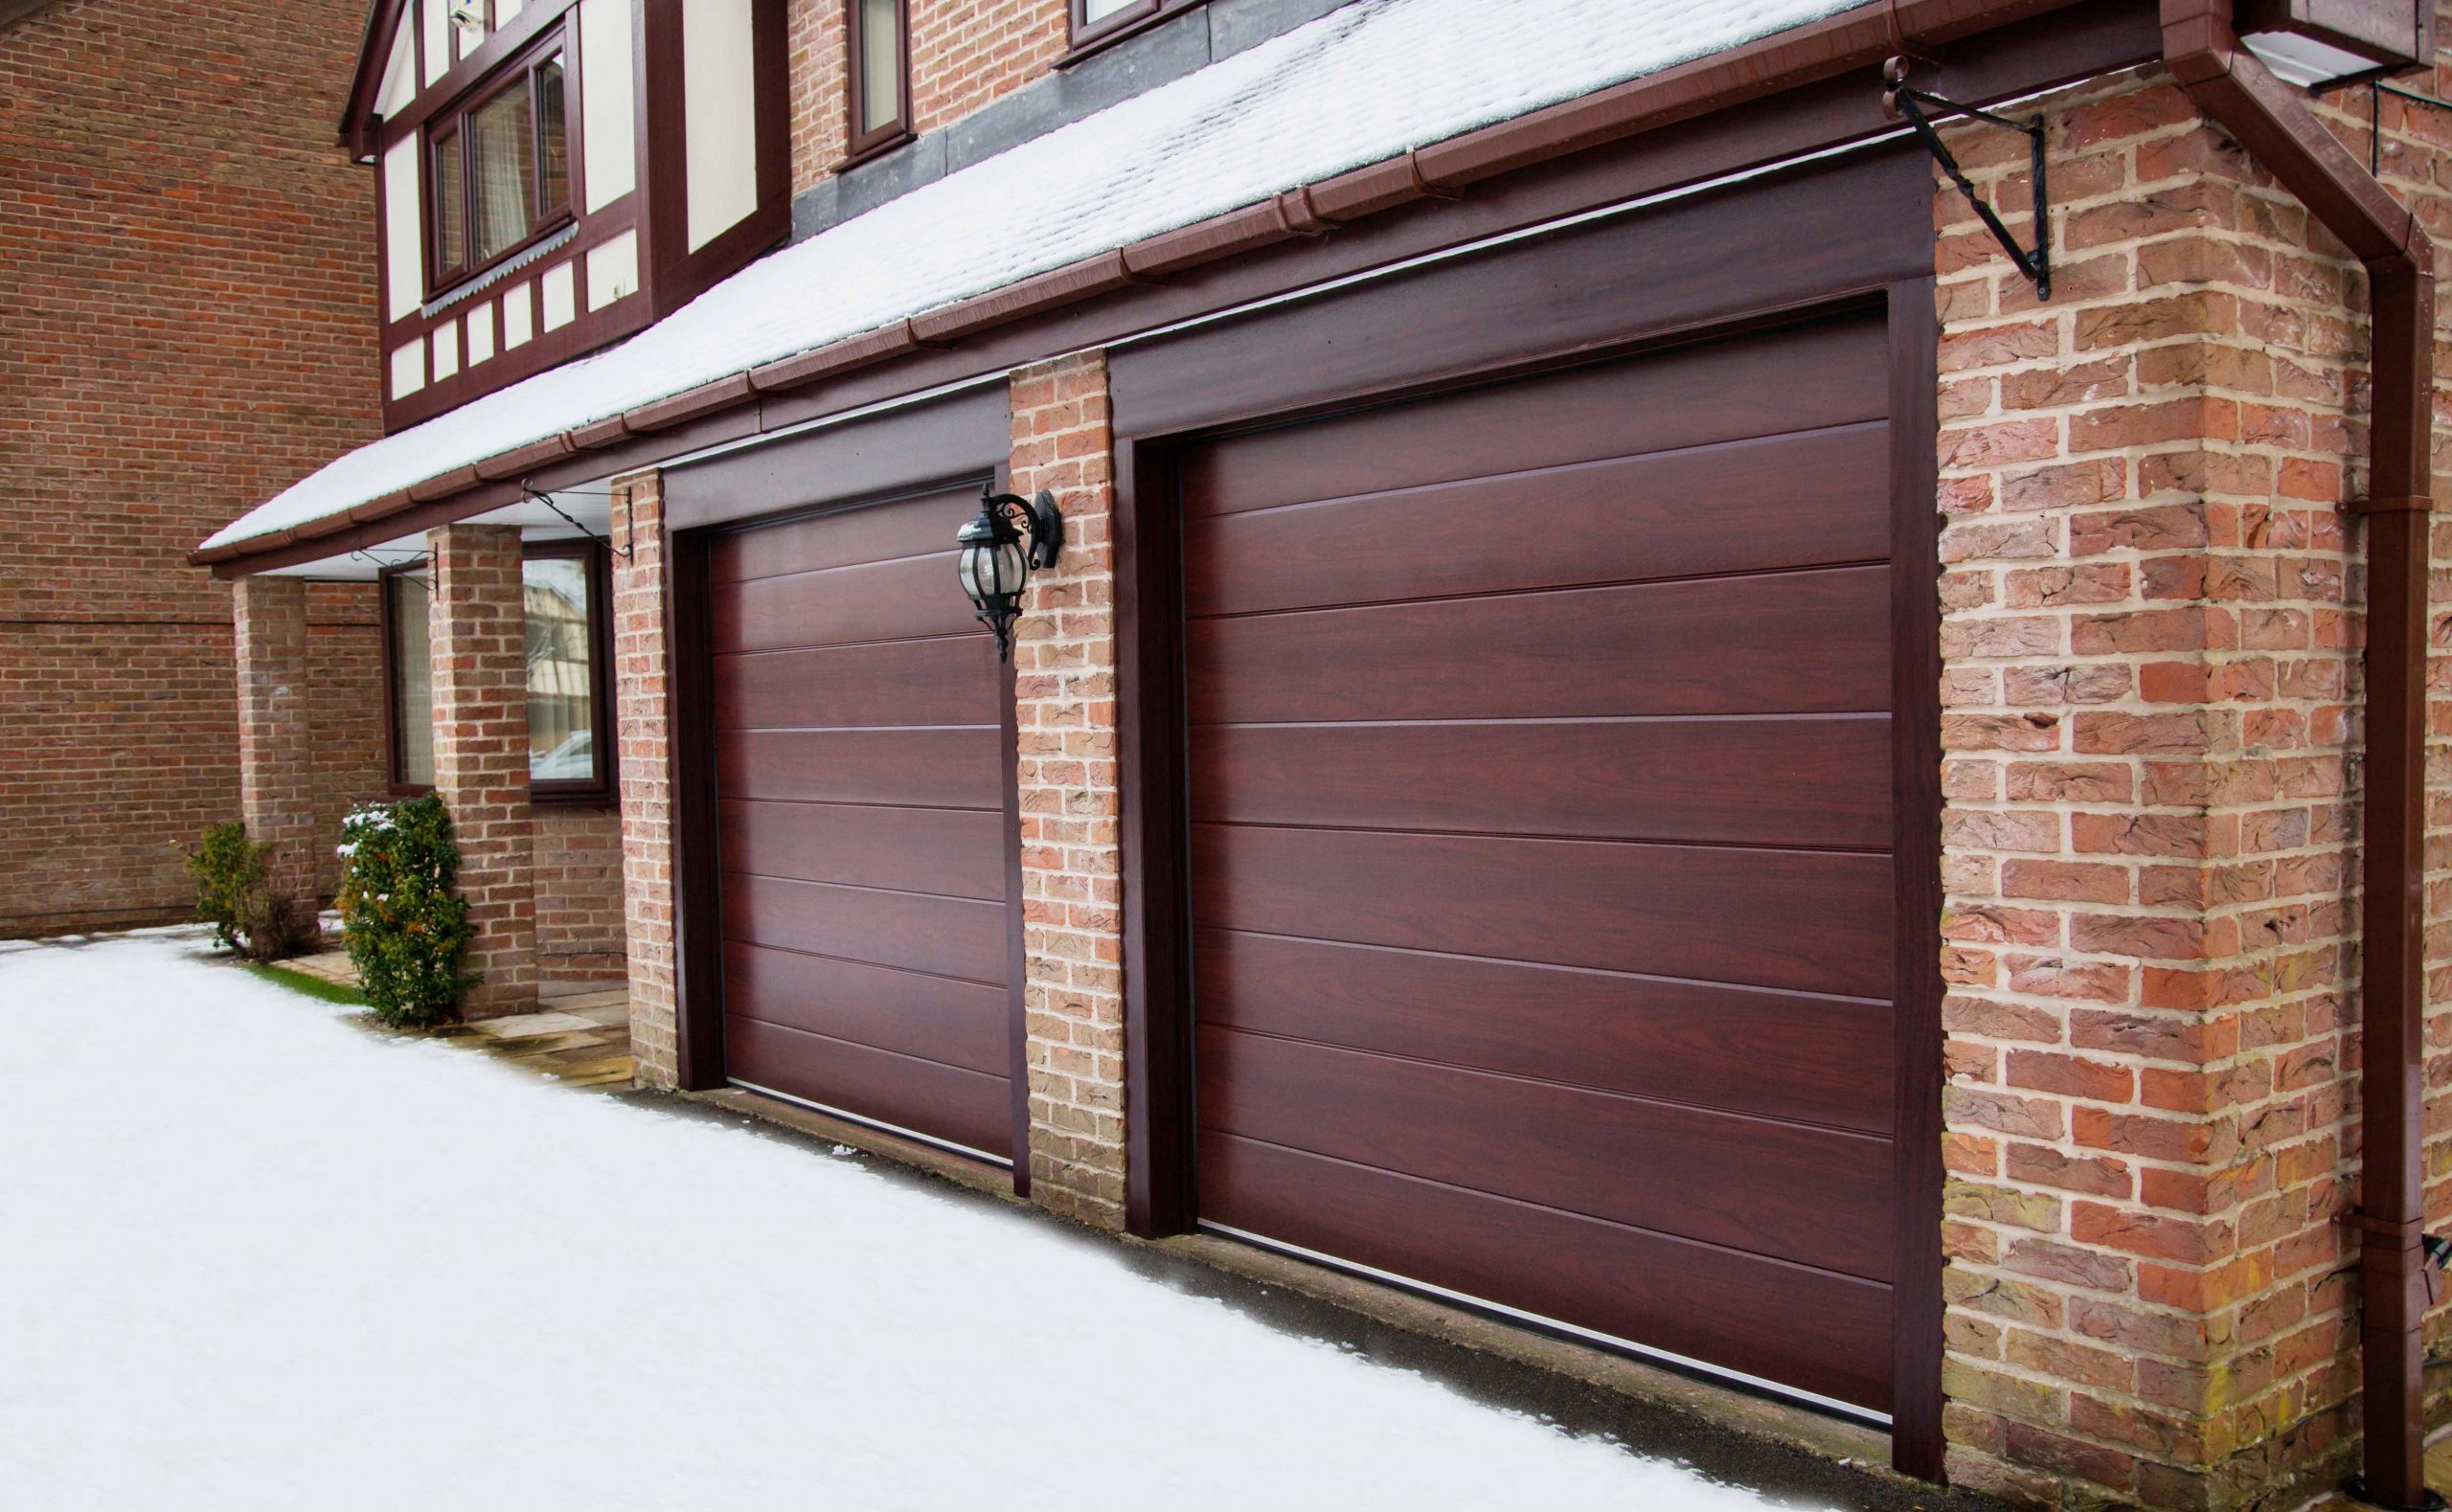 Creatice Garage Door Prices Online for Large Space